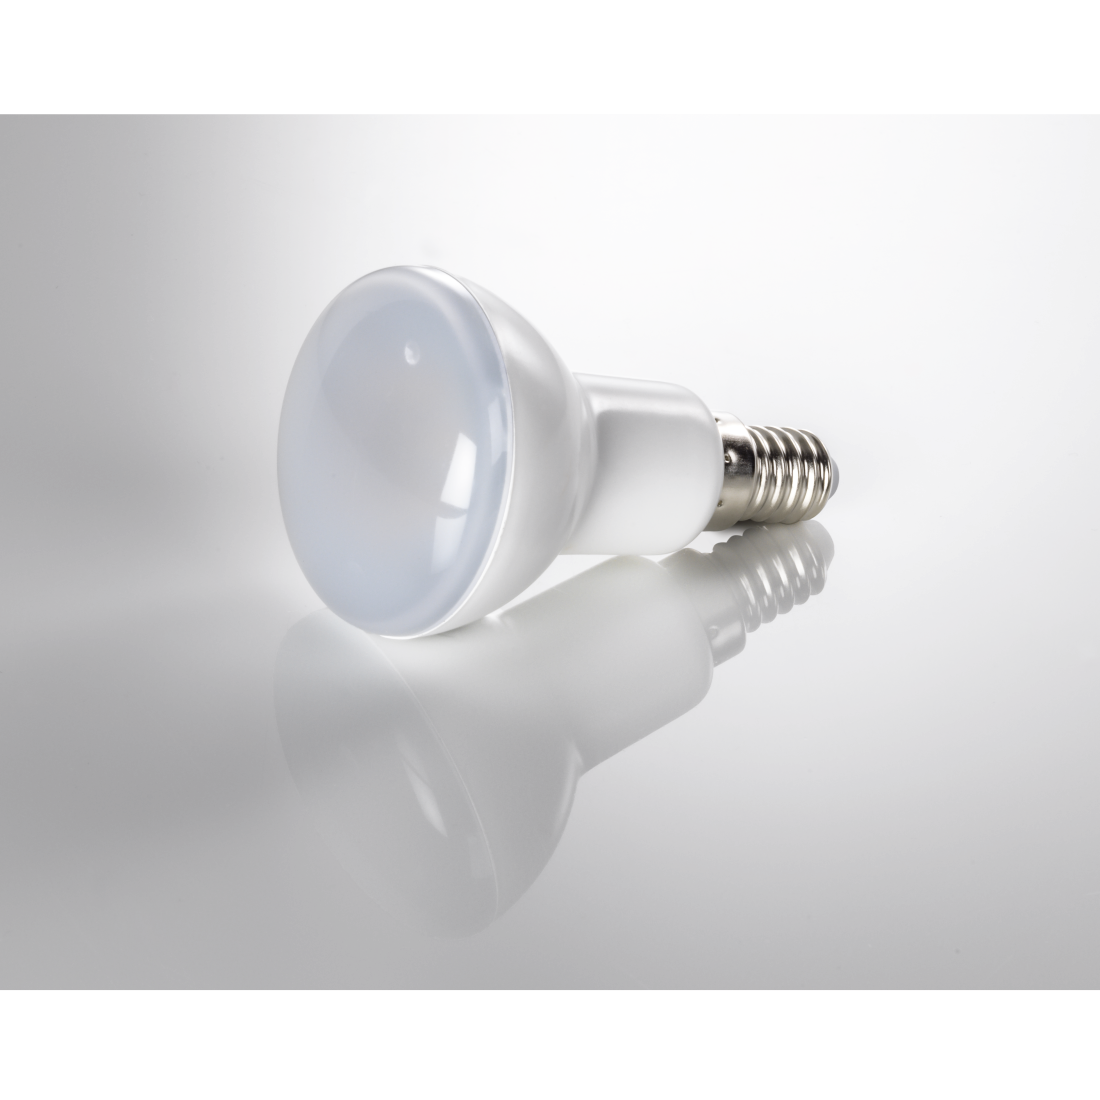 abx3 Druckfähige Abbildung 3 - Xavax, LED-Lampe, E14, 470lm ersetzt 40W, Reflektorlampe R50, Warmweiß, 2 Stück